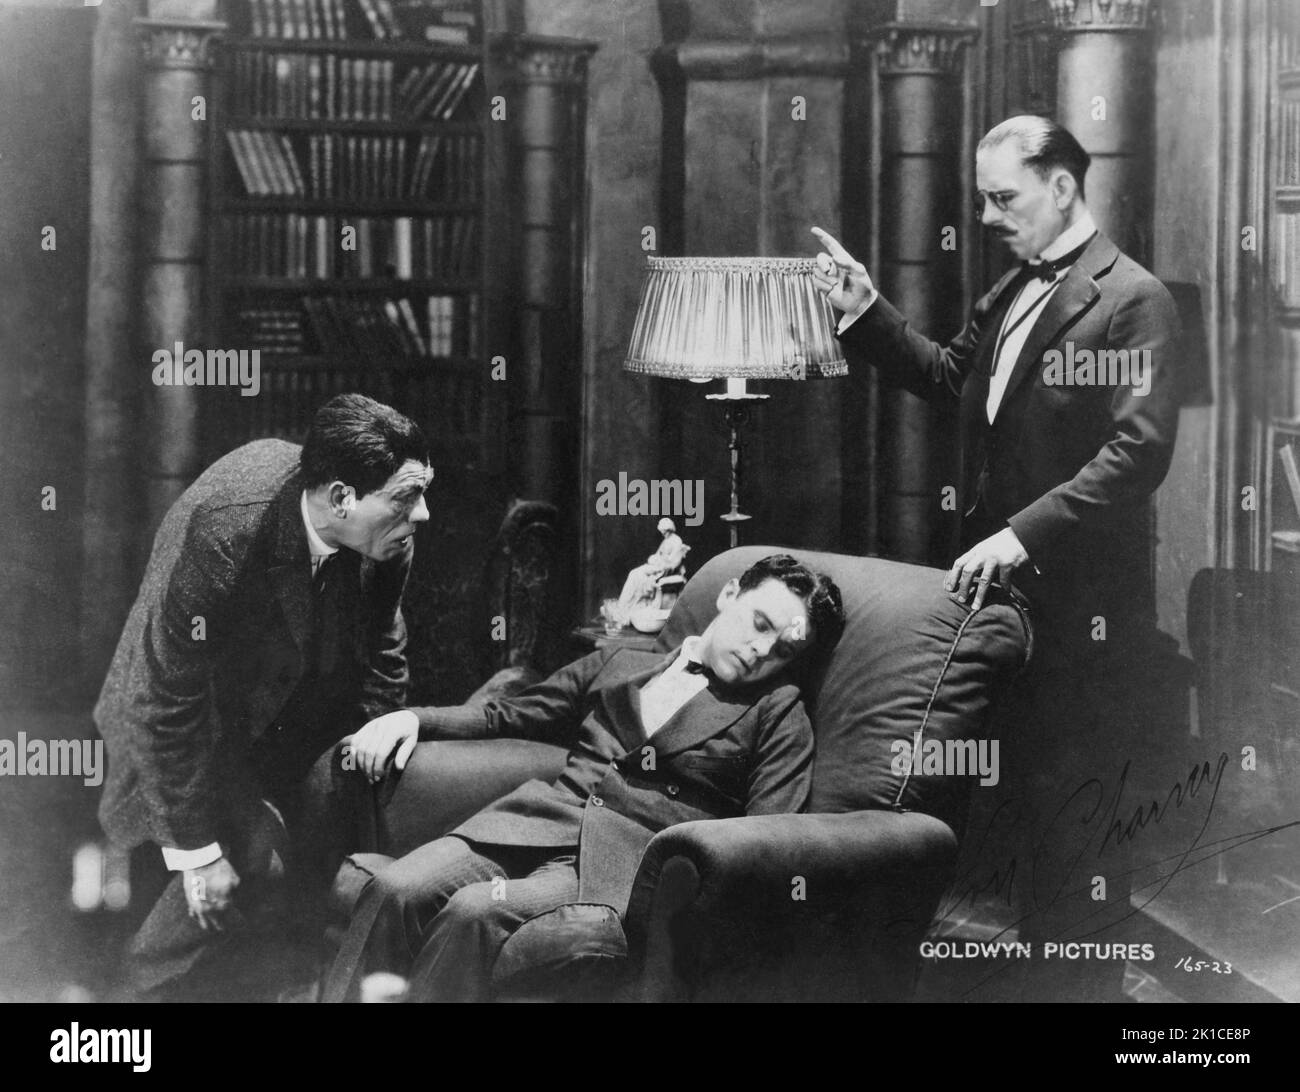 Lon Chaney (1883-1930), actor de cine estadounidense. Fotografia de Goldwyn Pictures. Stock Photo